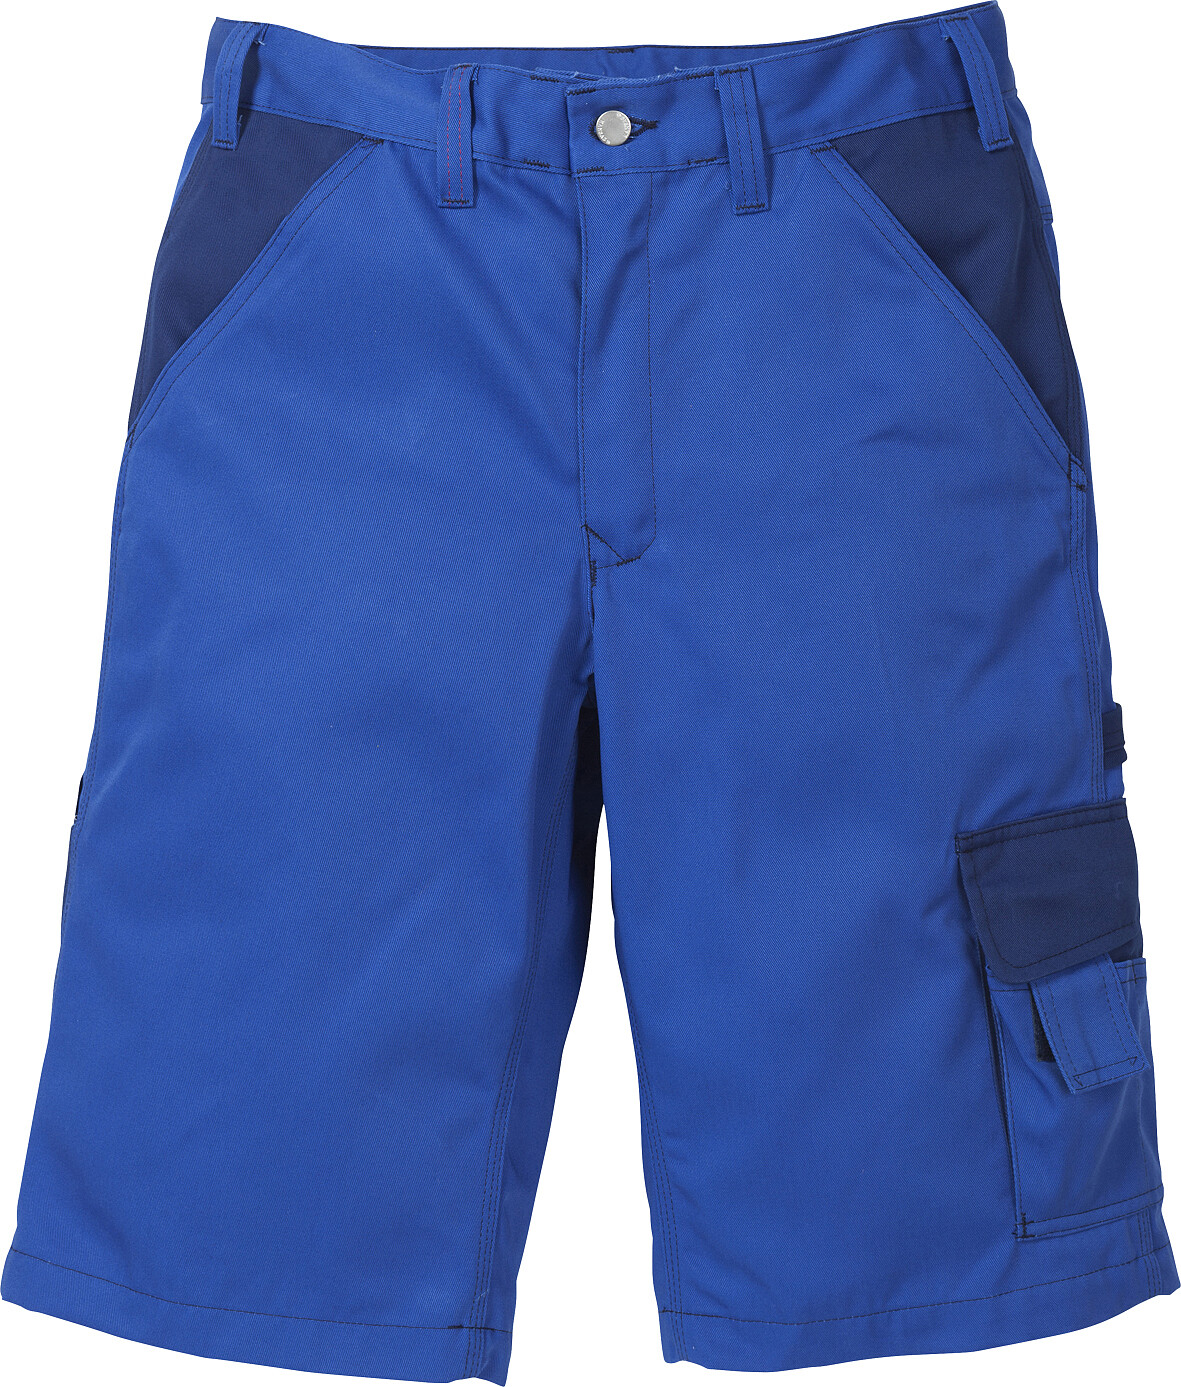 Icon Two Shorts 2020 LUXE, königsblau/marine, Gr. C52 